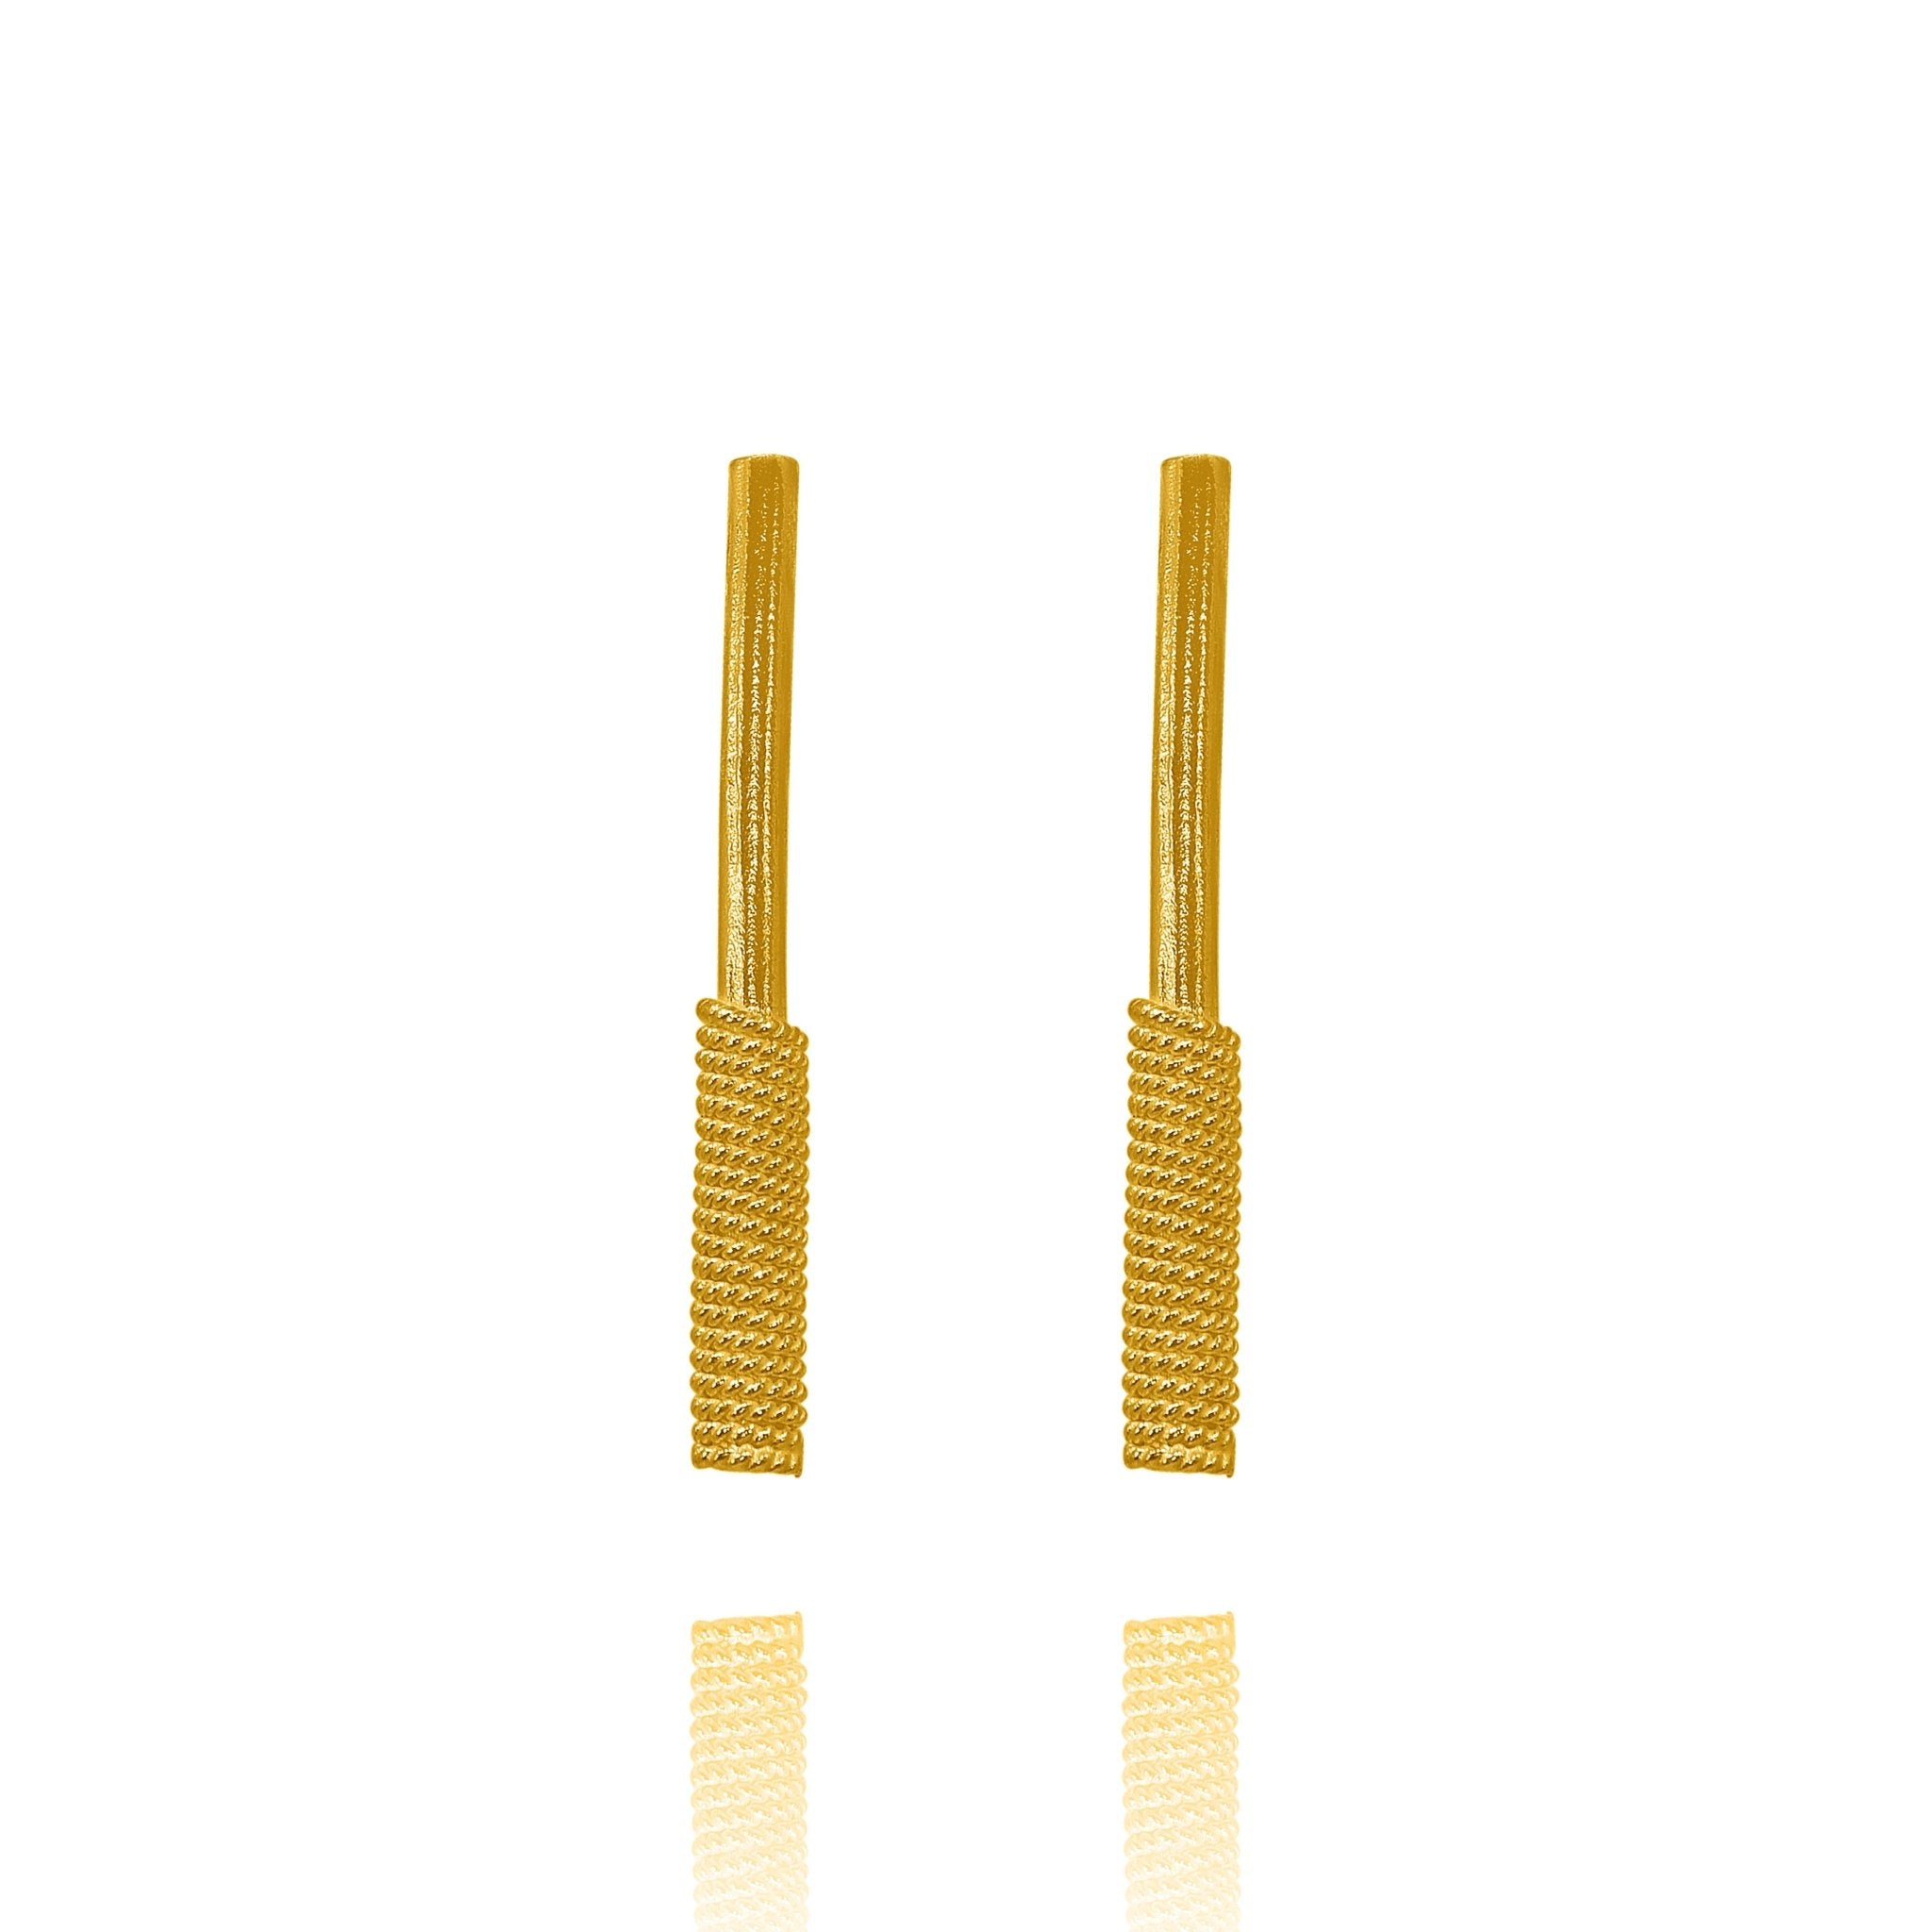 Adair 18k Gold Plated Filigree Stud Earrings - Earrings